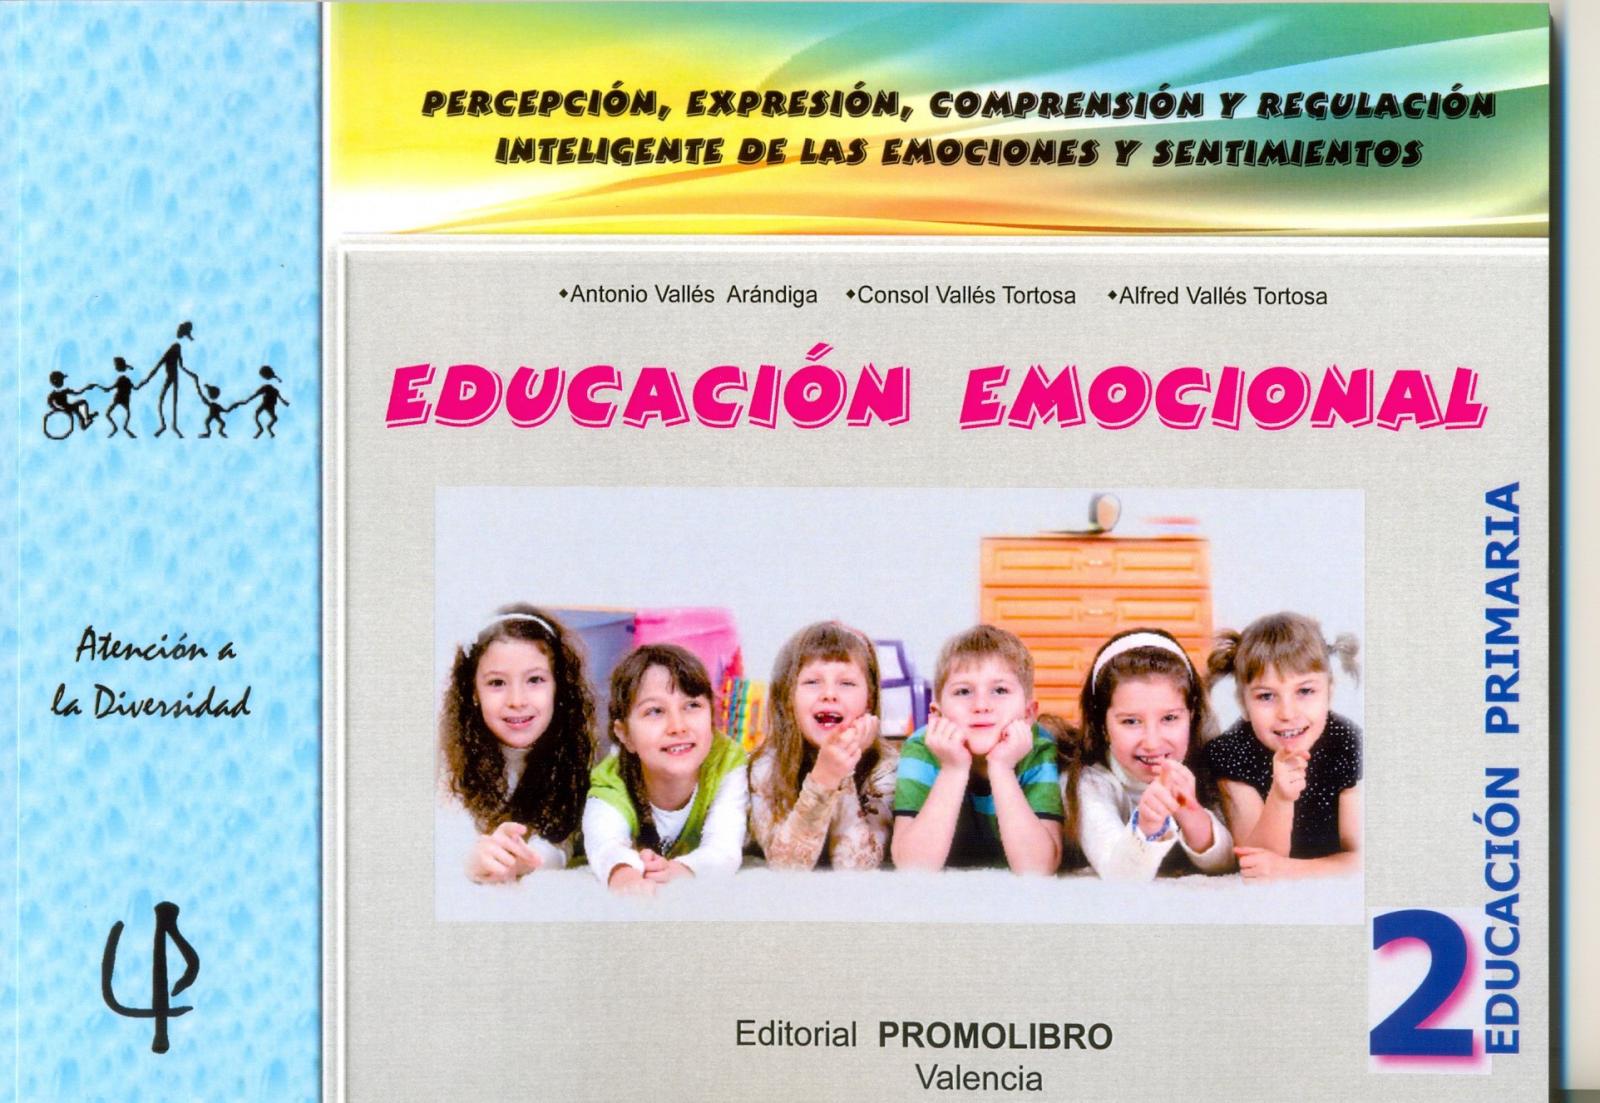 219.- EDUCACIÓN EMOCIONAL 2. Percepción, expresión, comprensión y regulación inteligente de las emociones y sentimientos. 2º Educación Primaria